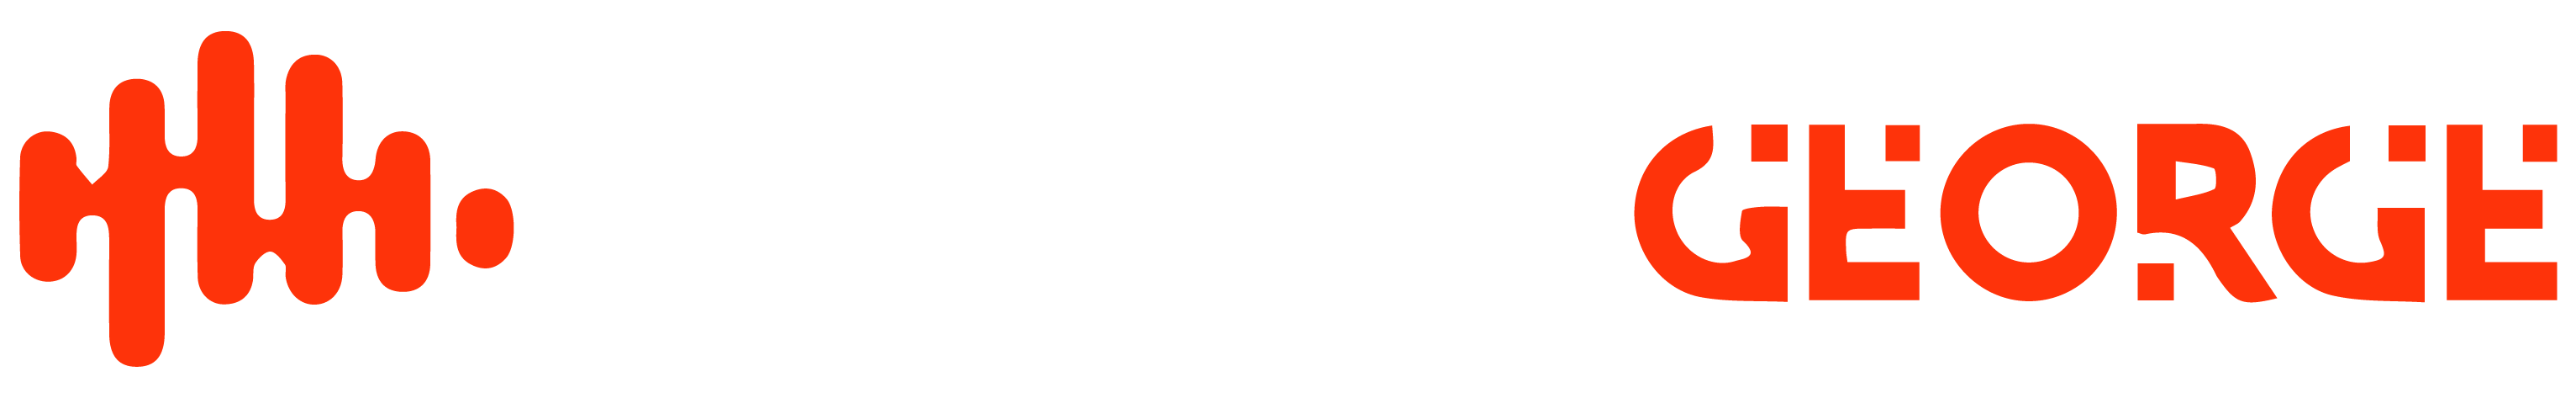 Wondergorge Logo